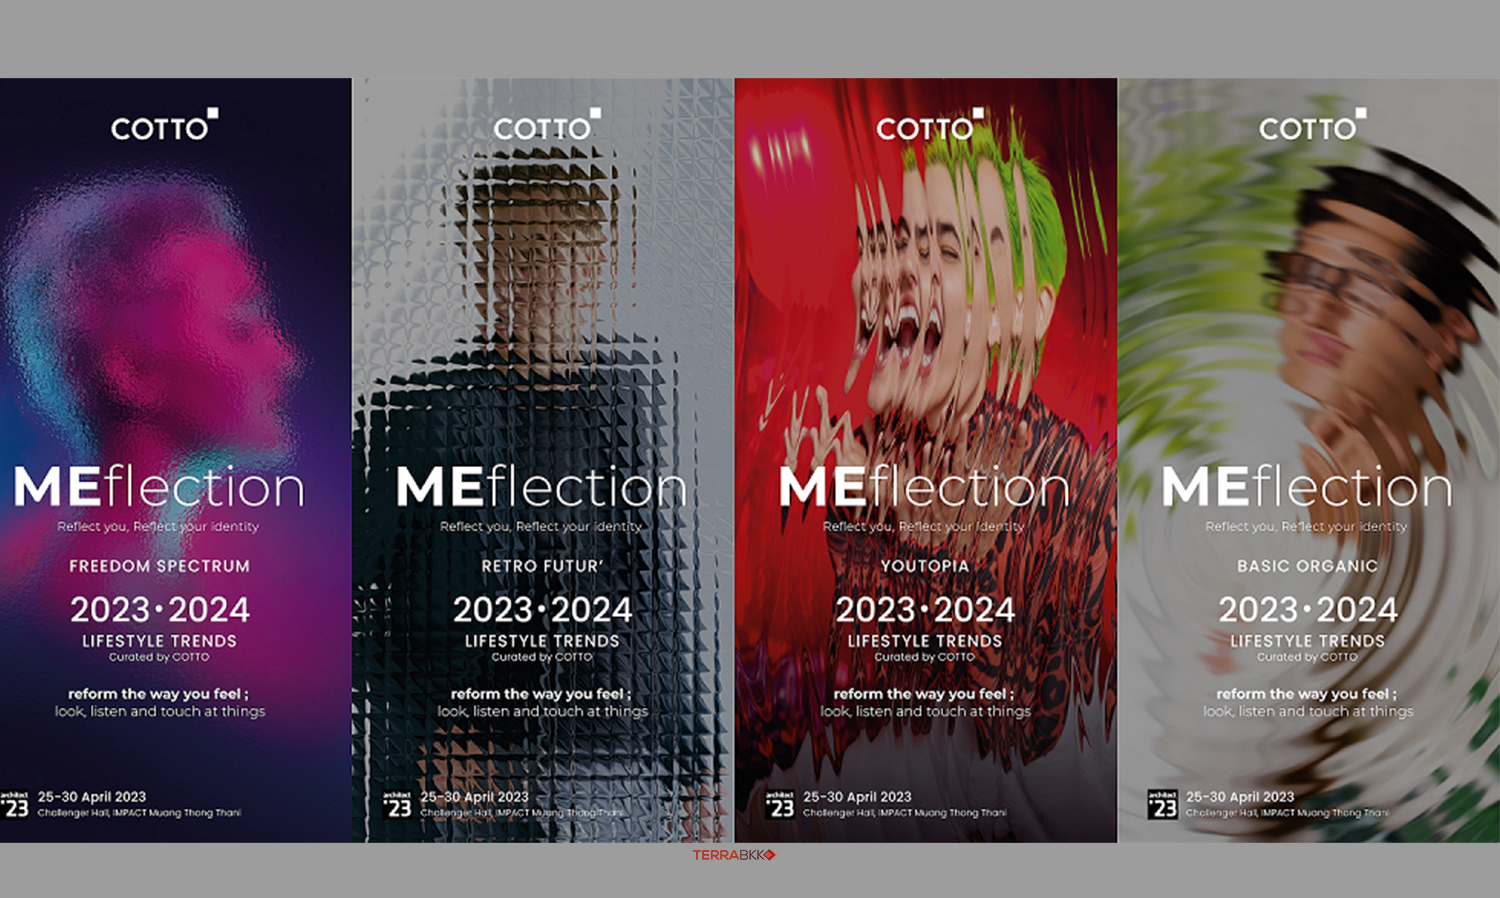 “คอตโต้” จับผลิตภัณฑ์รุ่นใหม่นำเสนอในรูปแบบงานศิลป์ภายใต้ธีม MEFlection   ตอกย้ำผู้นำนวัตกรรมวัสดุตกแต่ง ในงานสถาปนิก 2023